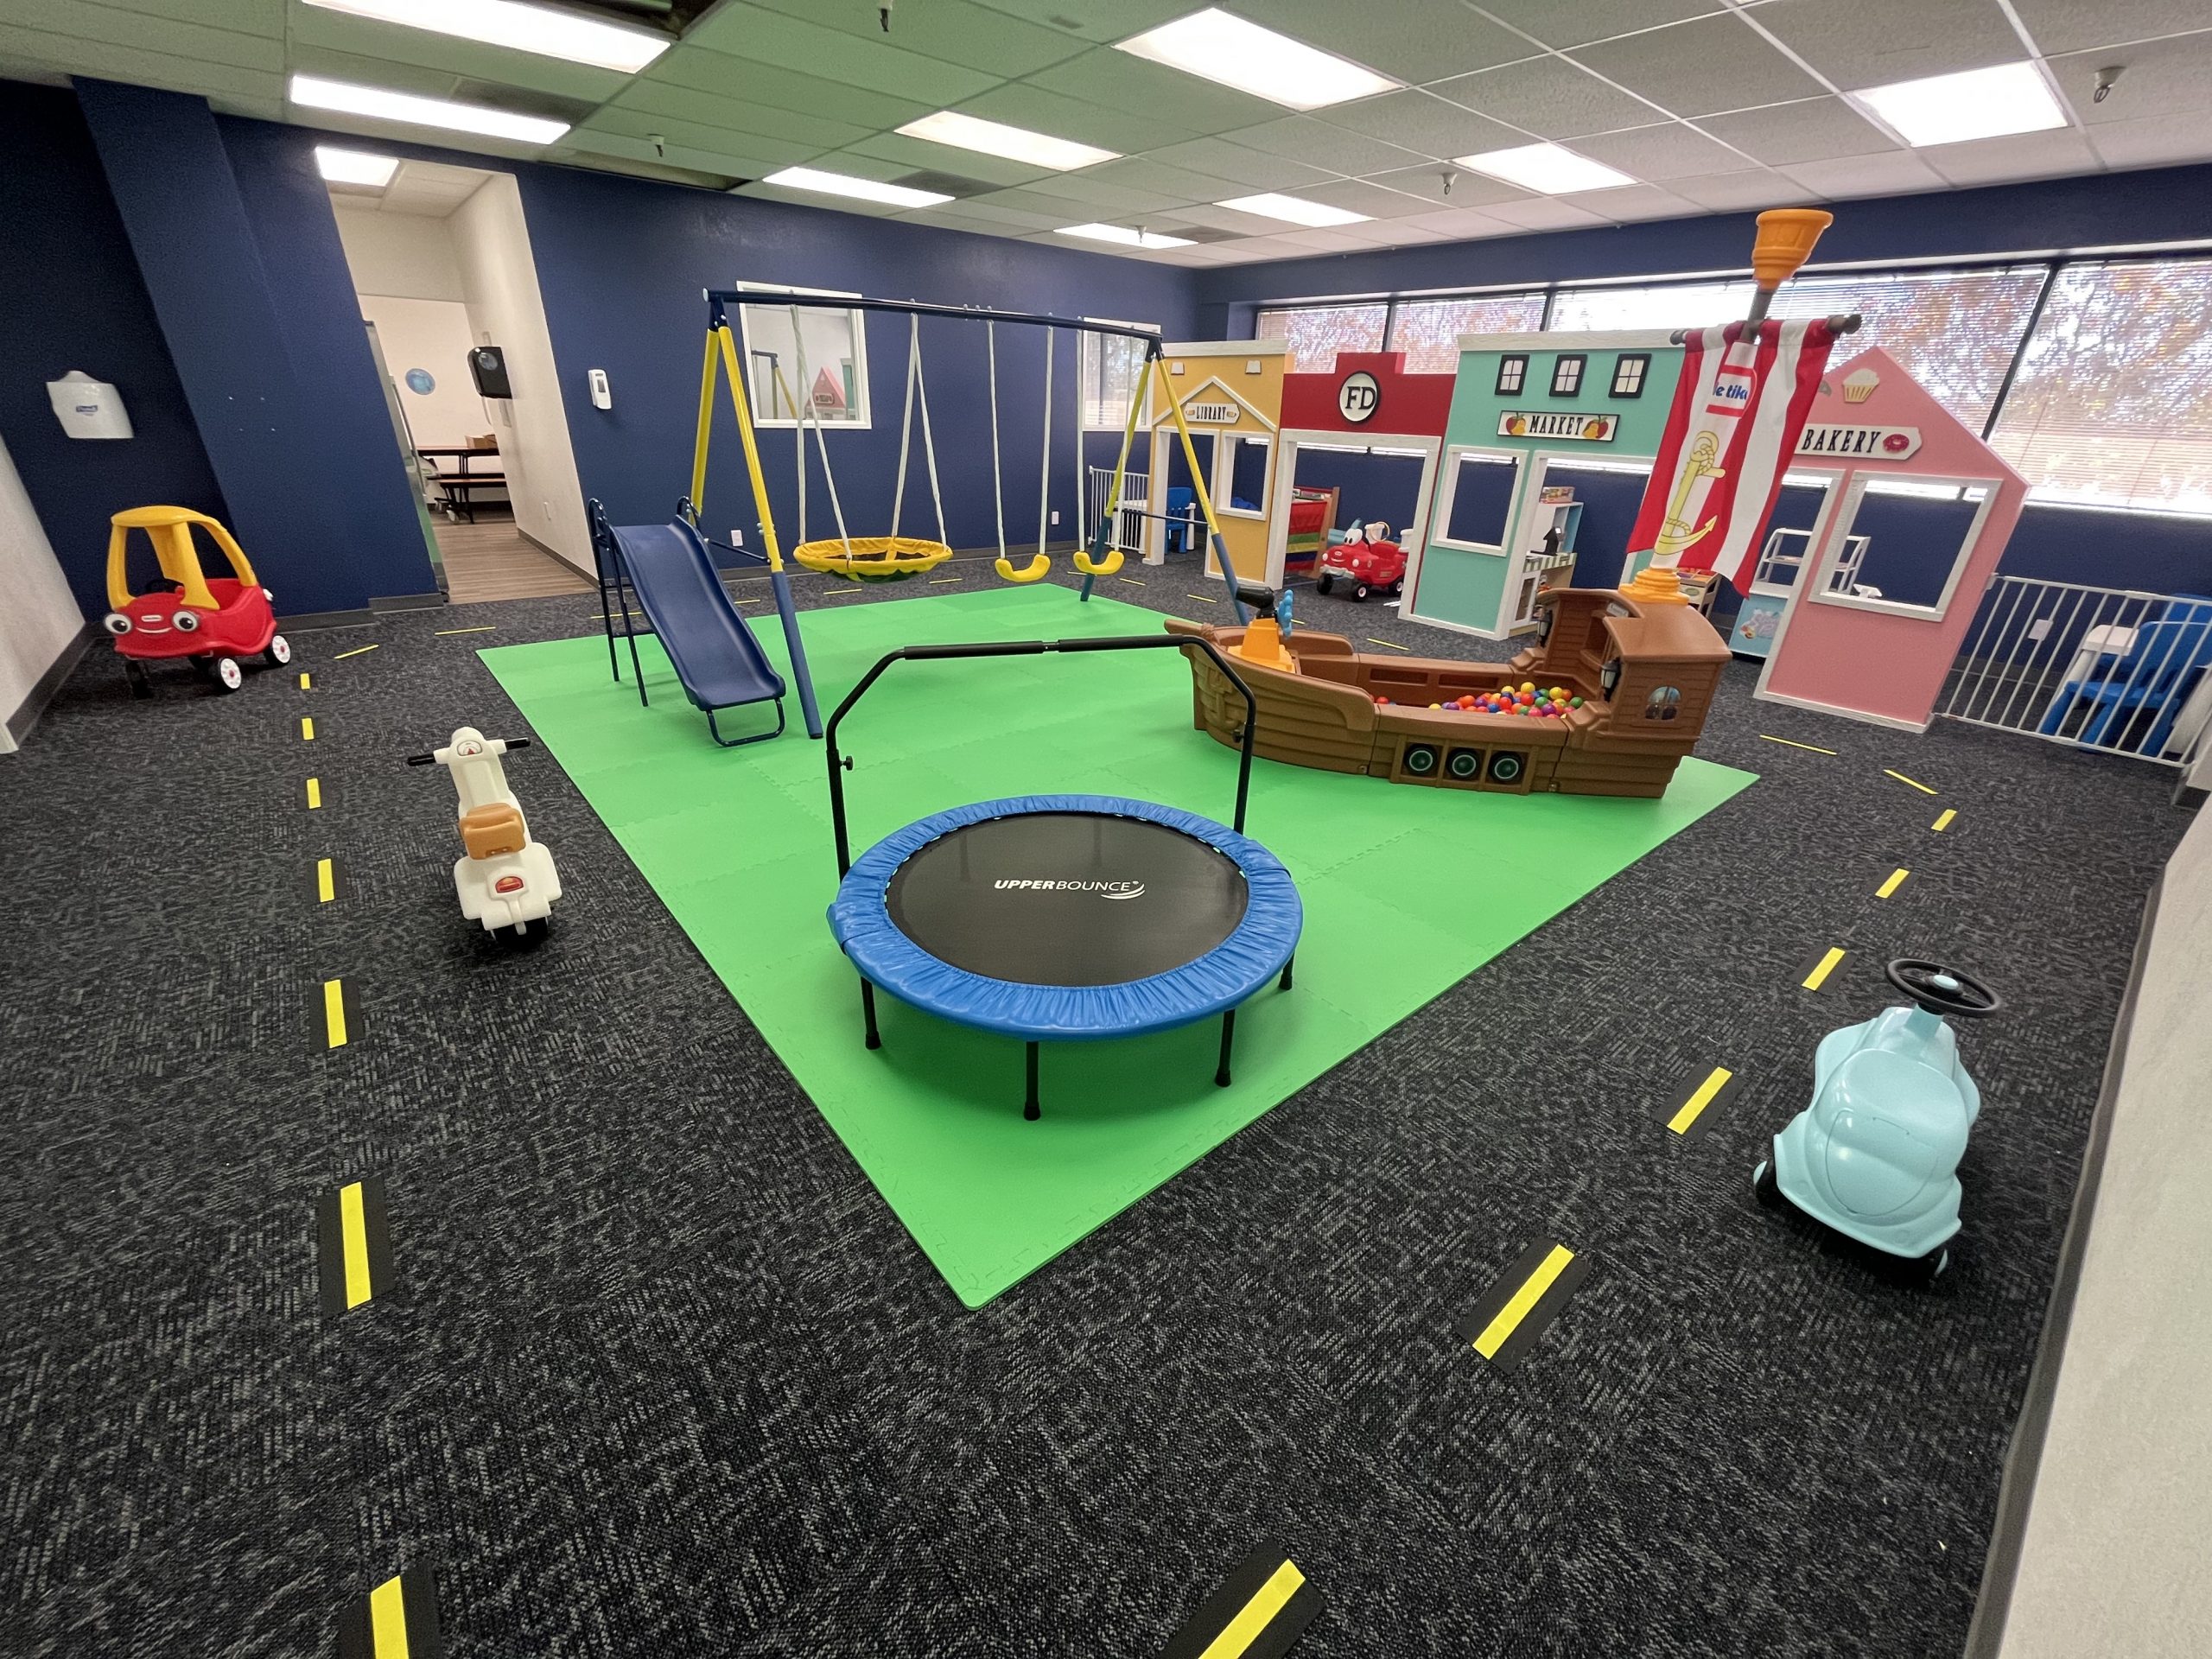 SOS Mesa provides play based learning